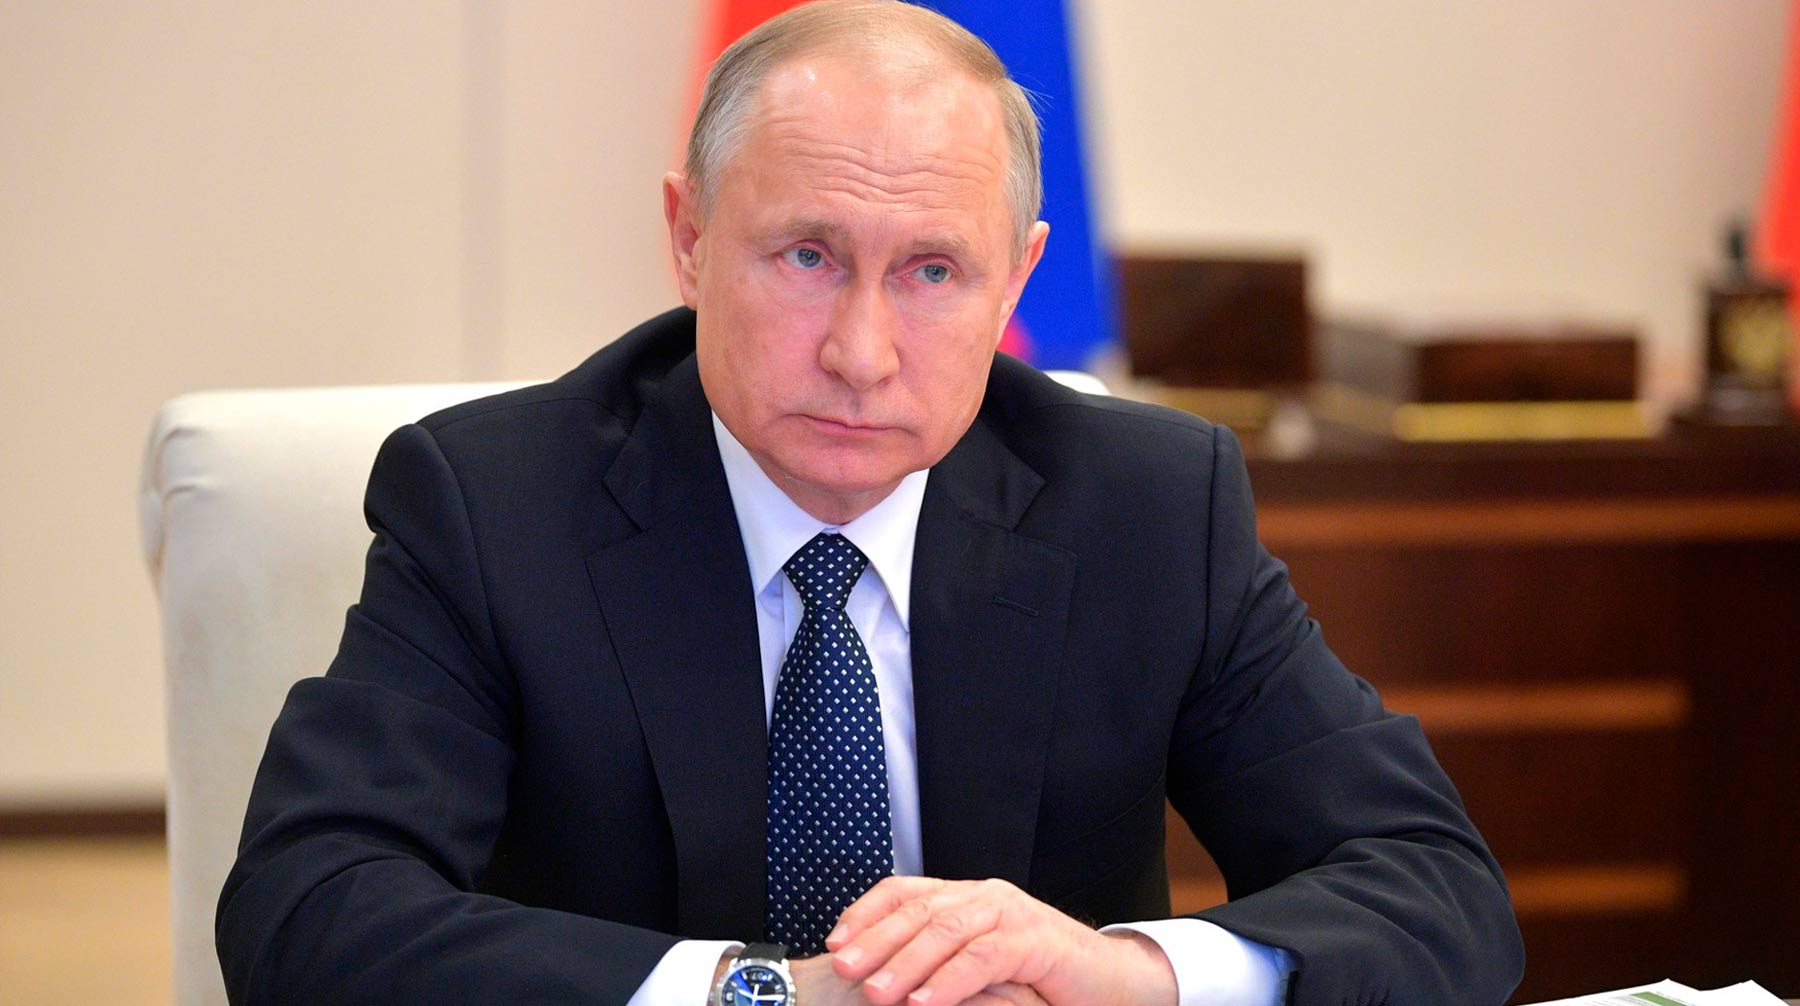 Российский лидер также поддержал идею ограничить закупки госкомпаниями иностранной продукции легпрома Фото: © Kremlin Pool